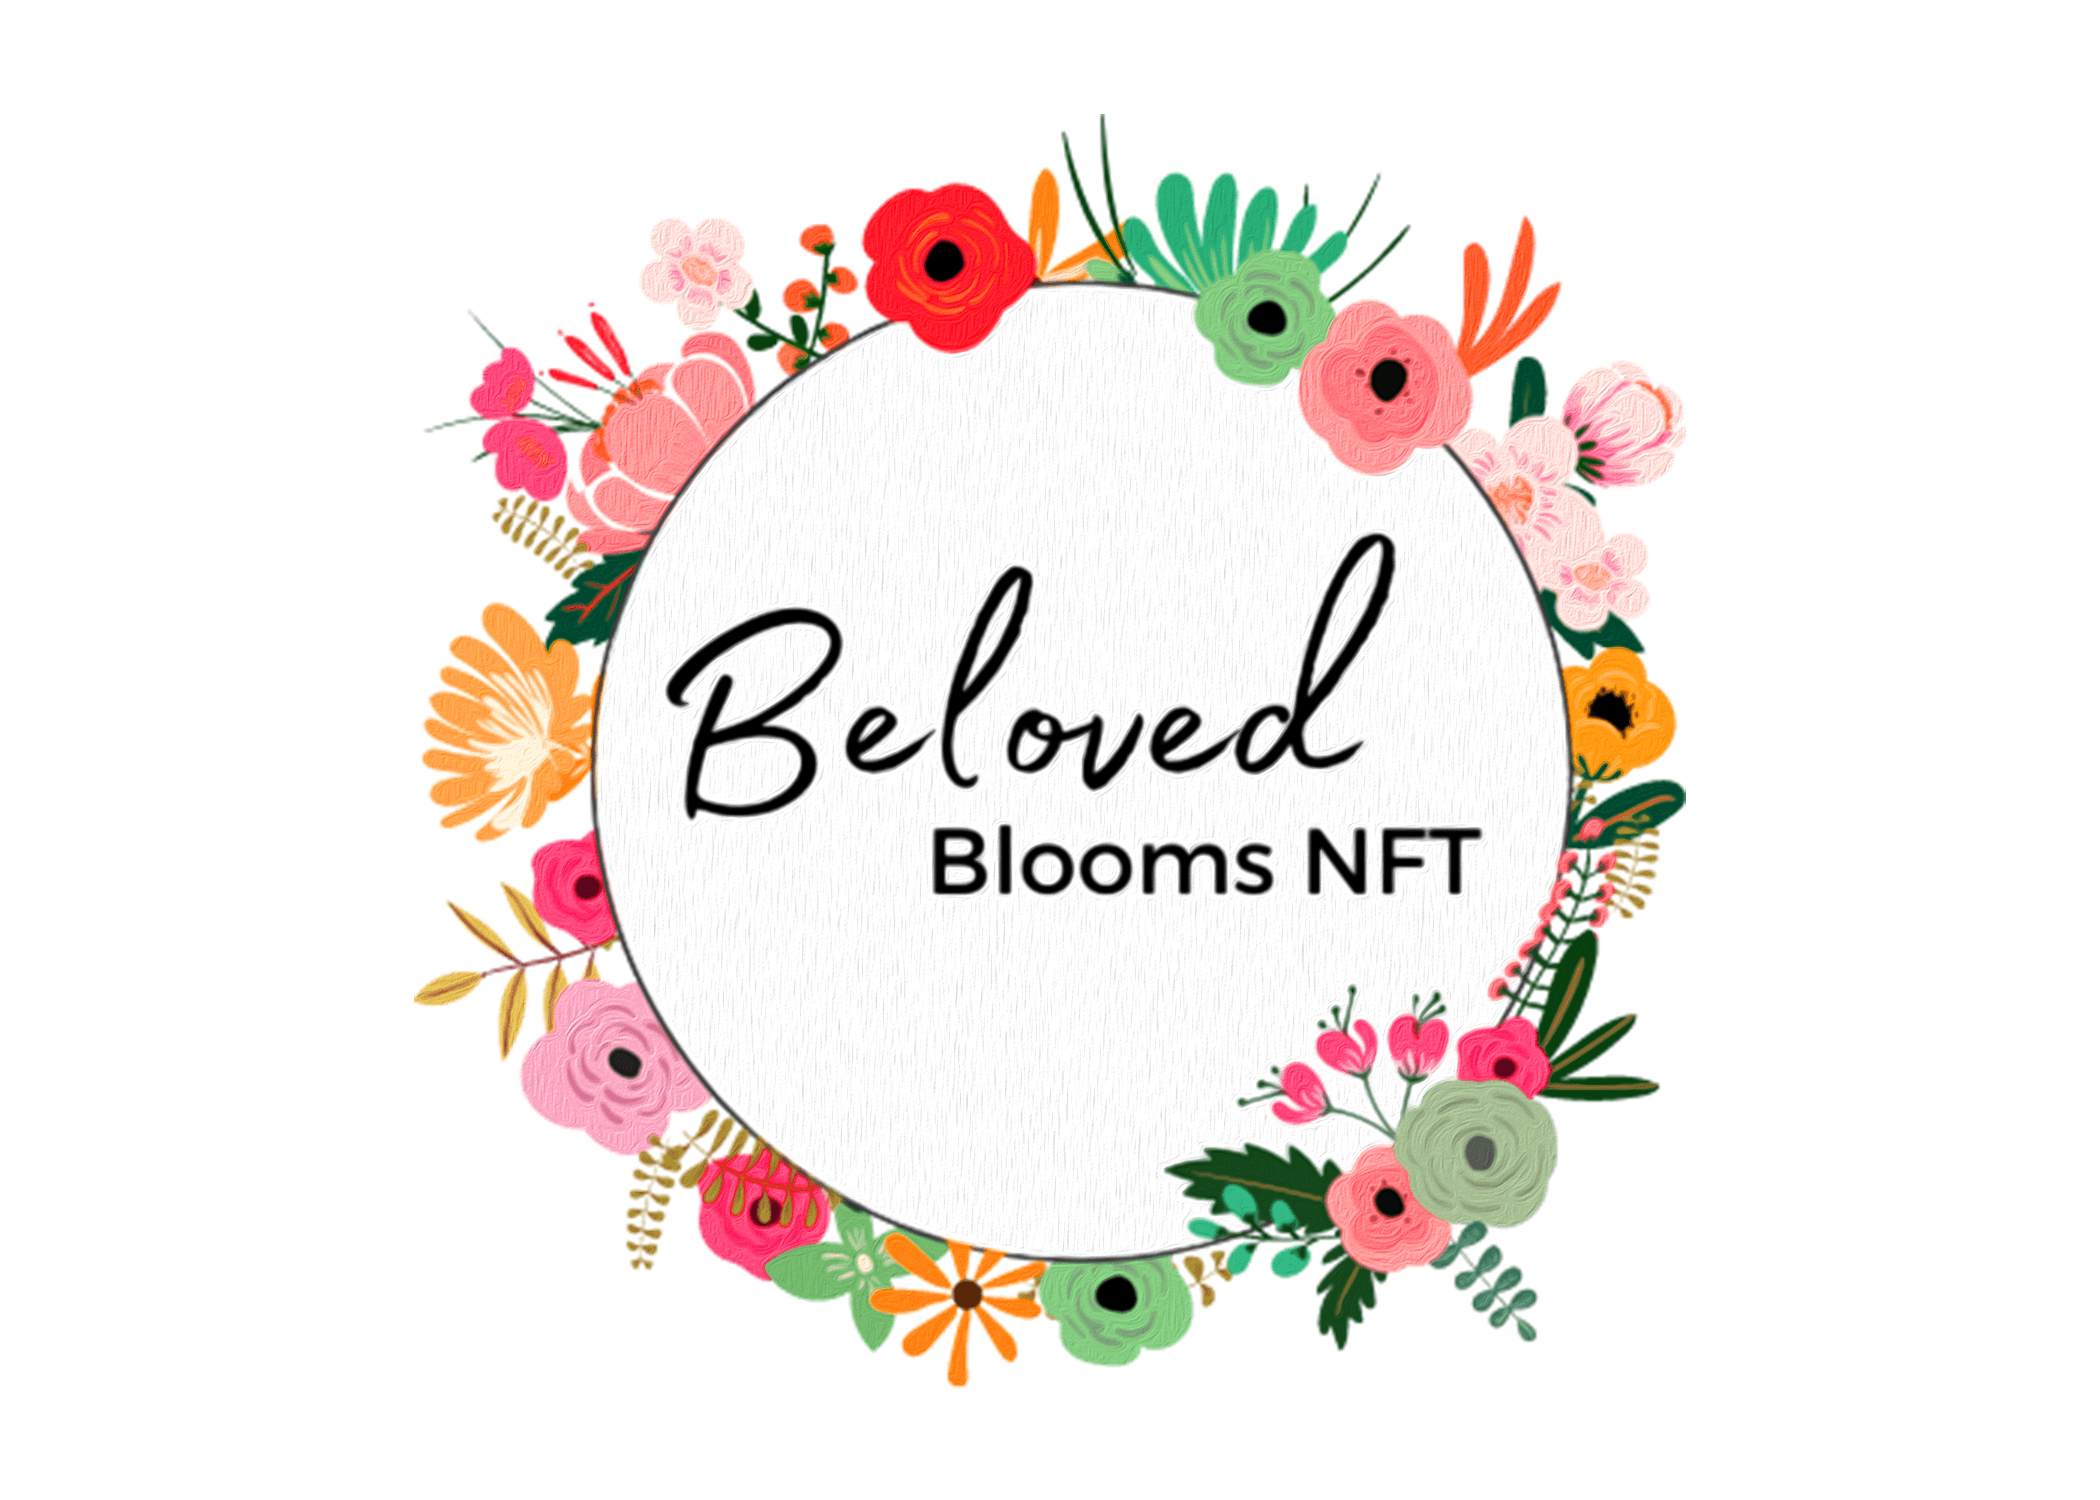 Beloved-Blooms-NFT